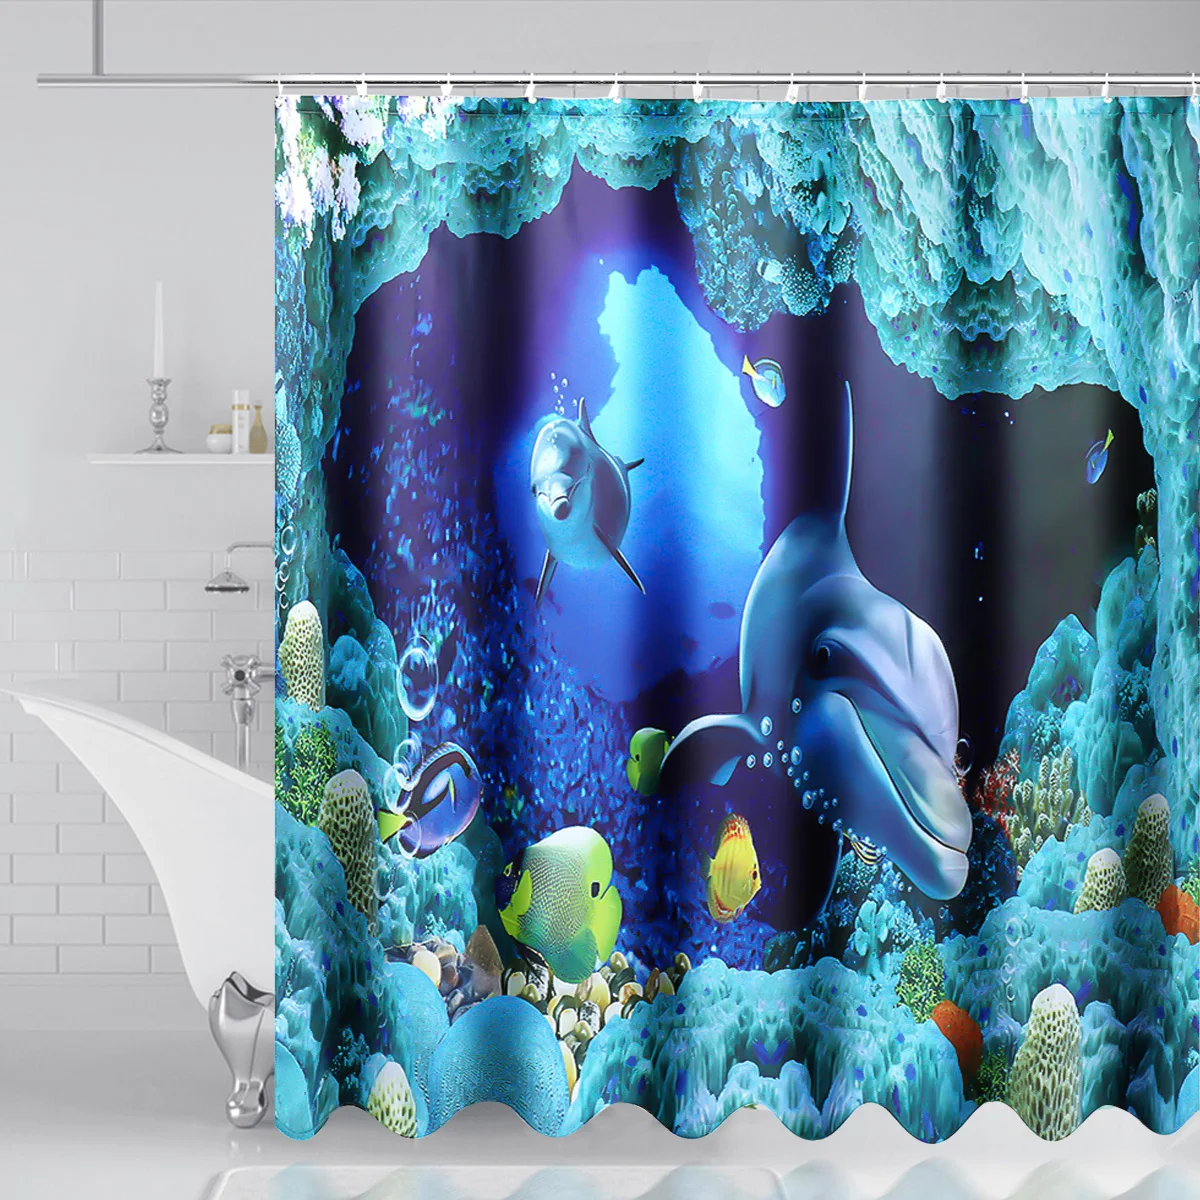 Океанский Дельфин Глубокий морской полиэстер занавеска для душа ванная комната водонепроницаемый с 10 крючками пьедестал ковер крышка унитаза ванна коврик набор